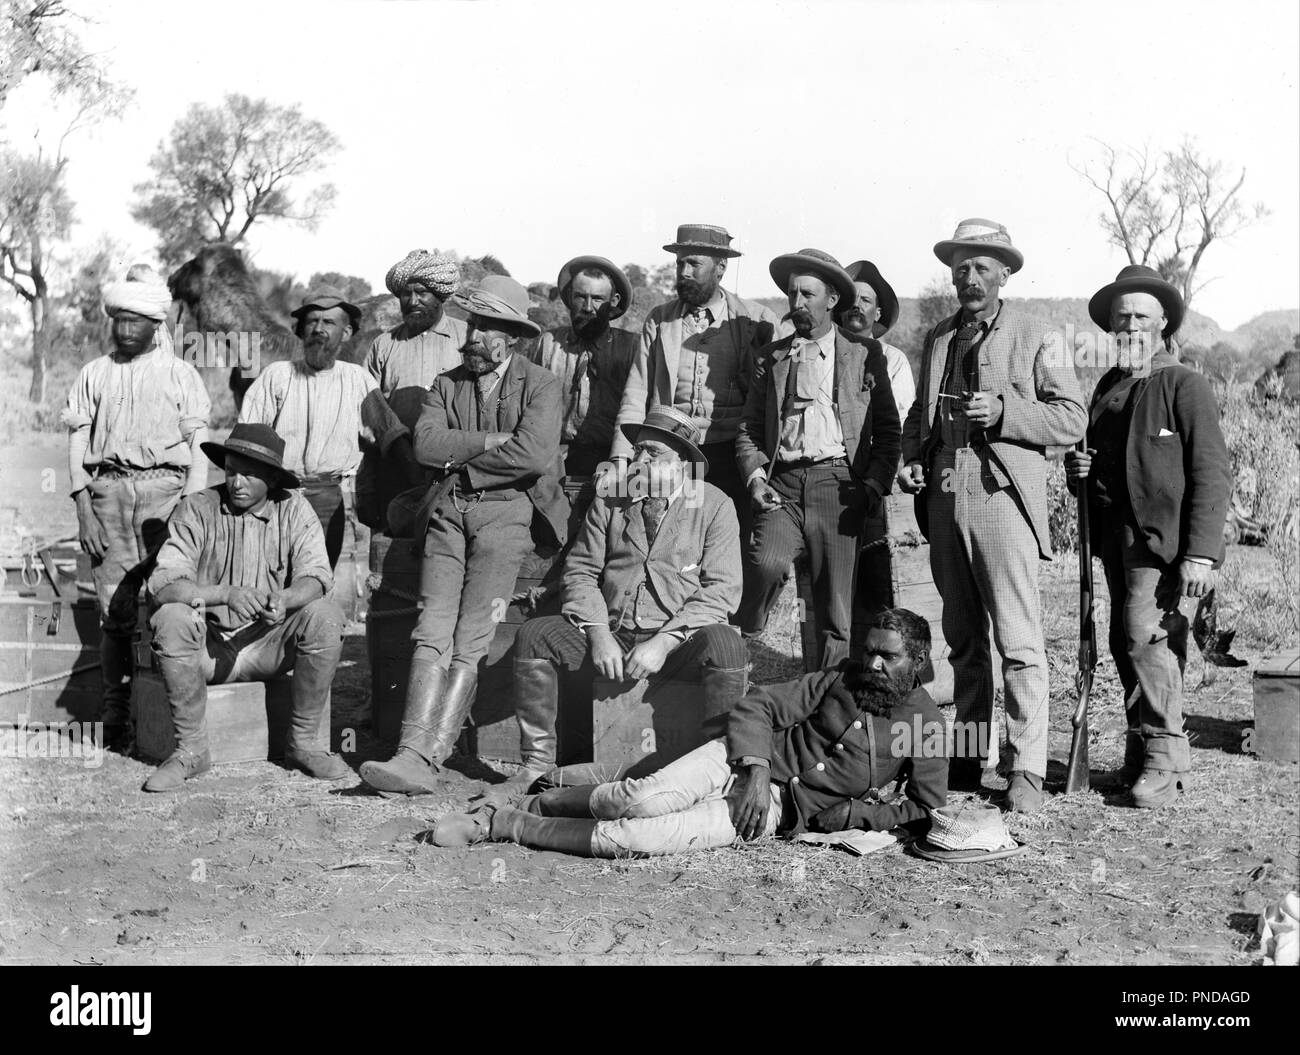 Mitglieder der Horn Expedition, Alice Springs, Australien, 1894. Datum/Zeitraum: 1894. Bild. Glasplatte Glasplatte negativ negativ. Höhe: 120 mm (4,72 in); Breite: 160 mm (6.29 in). Autor: Walter Baldwin Spencer. Stockfoto